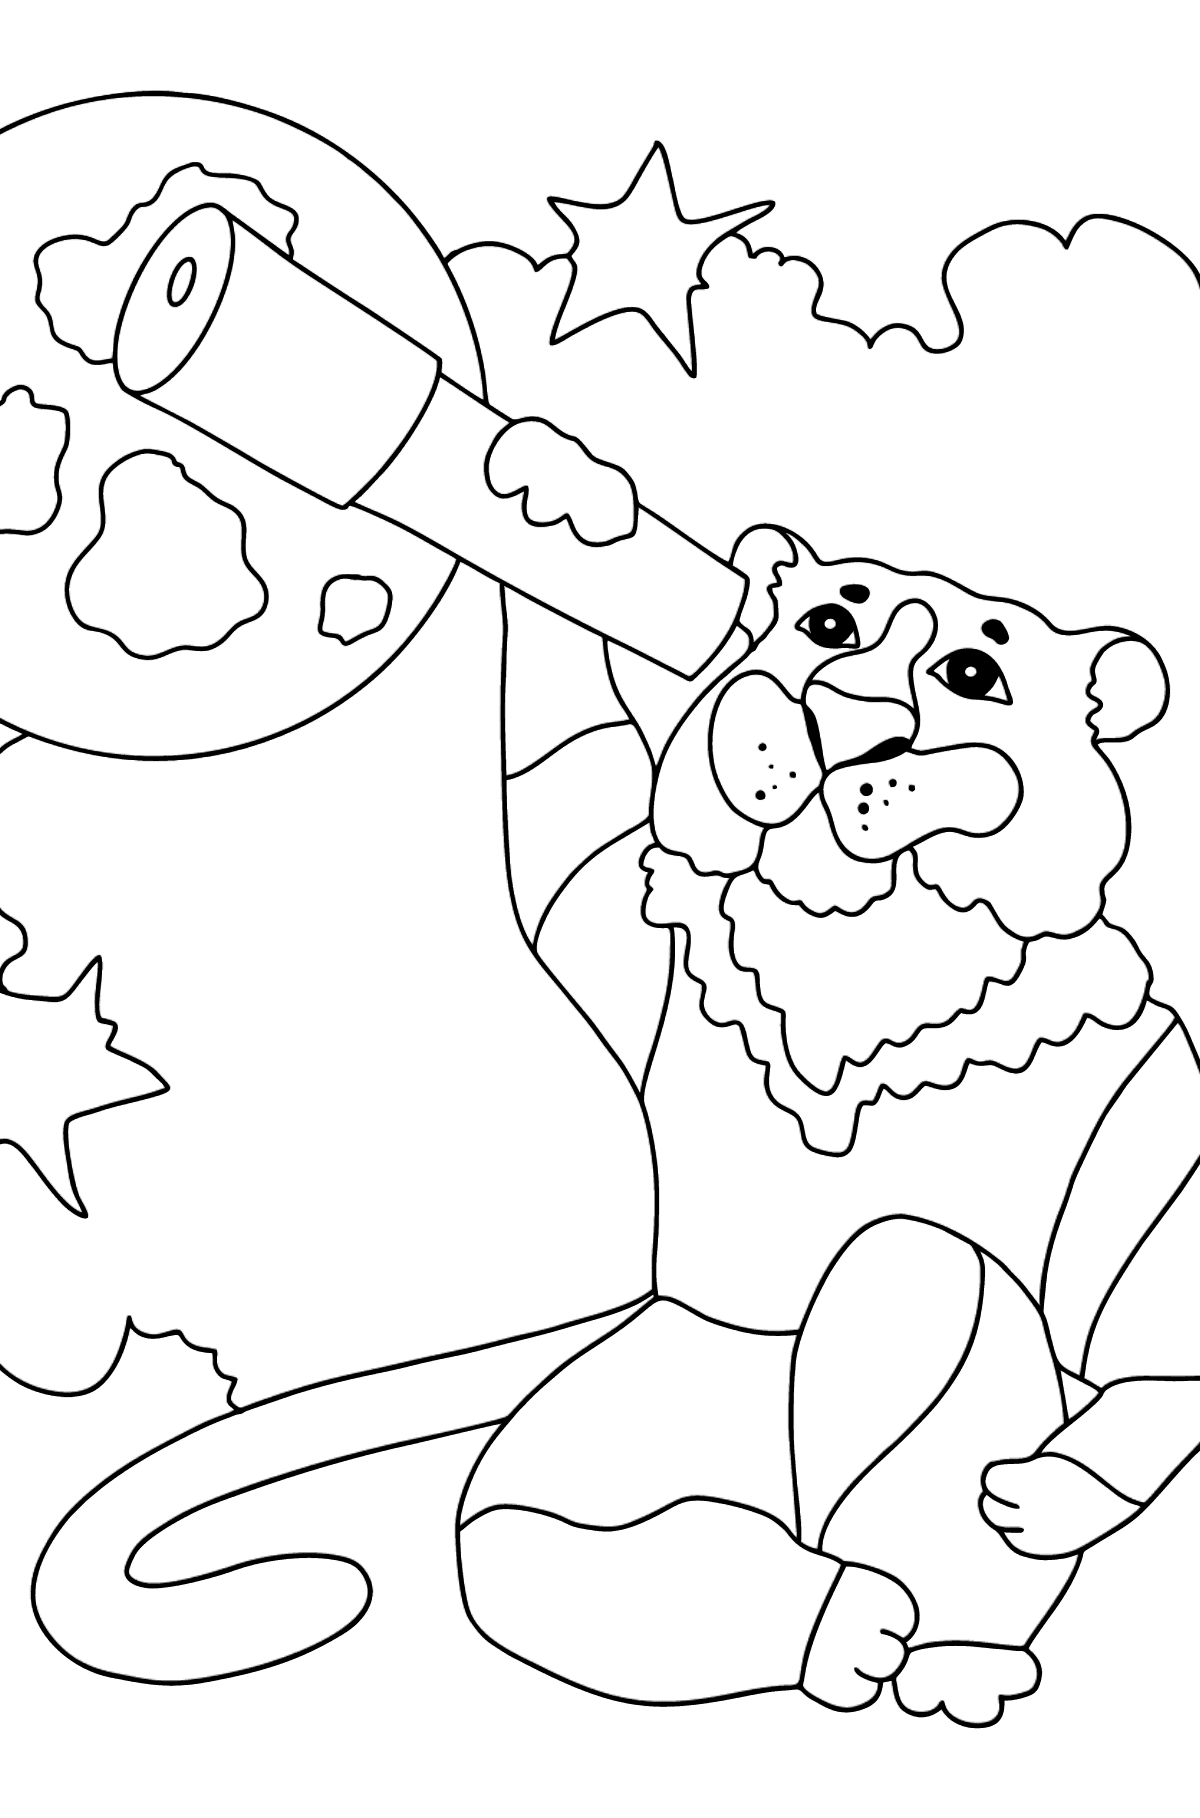 Умный Тигр Раскраска - Картинки для Детей